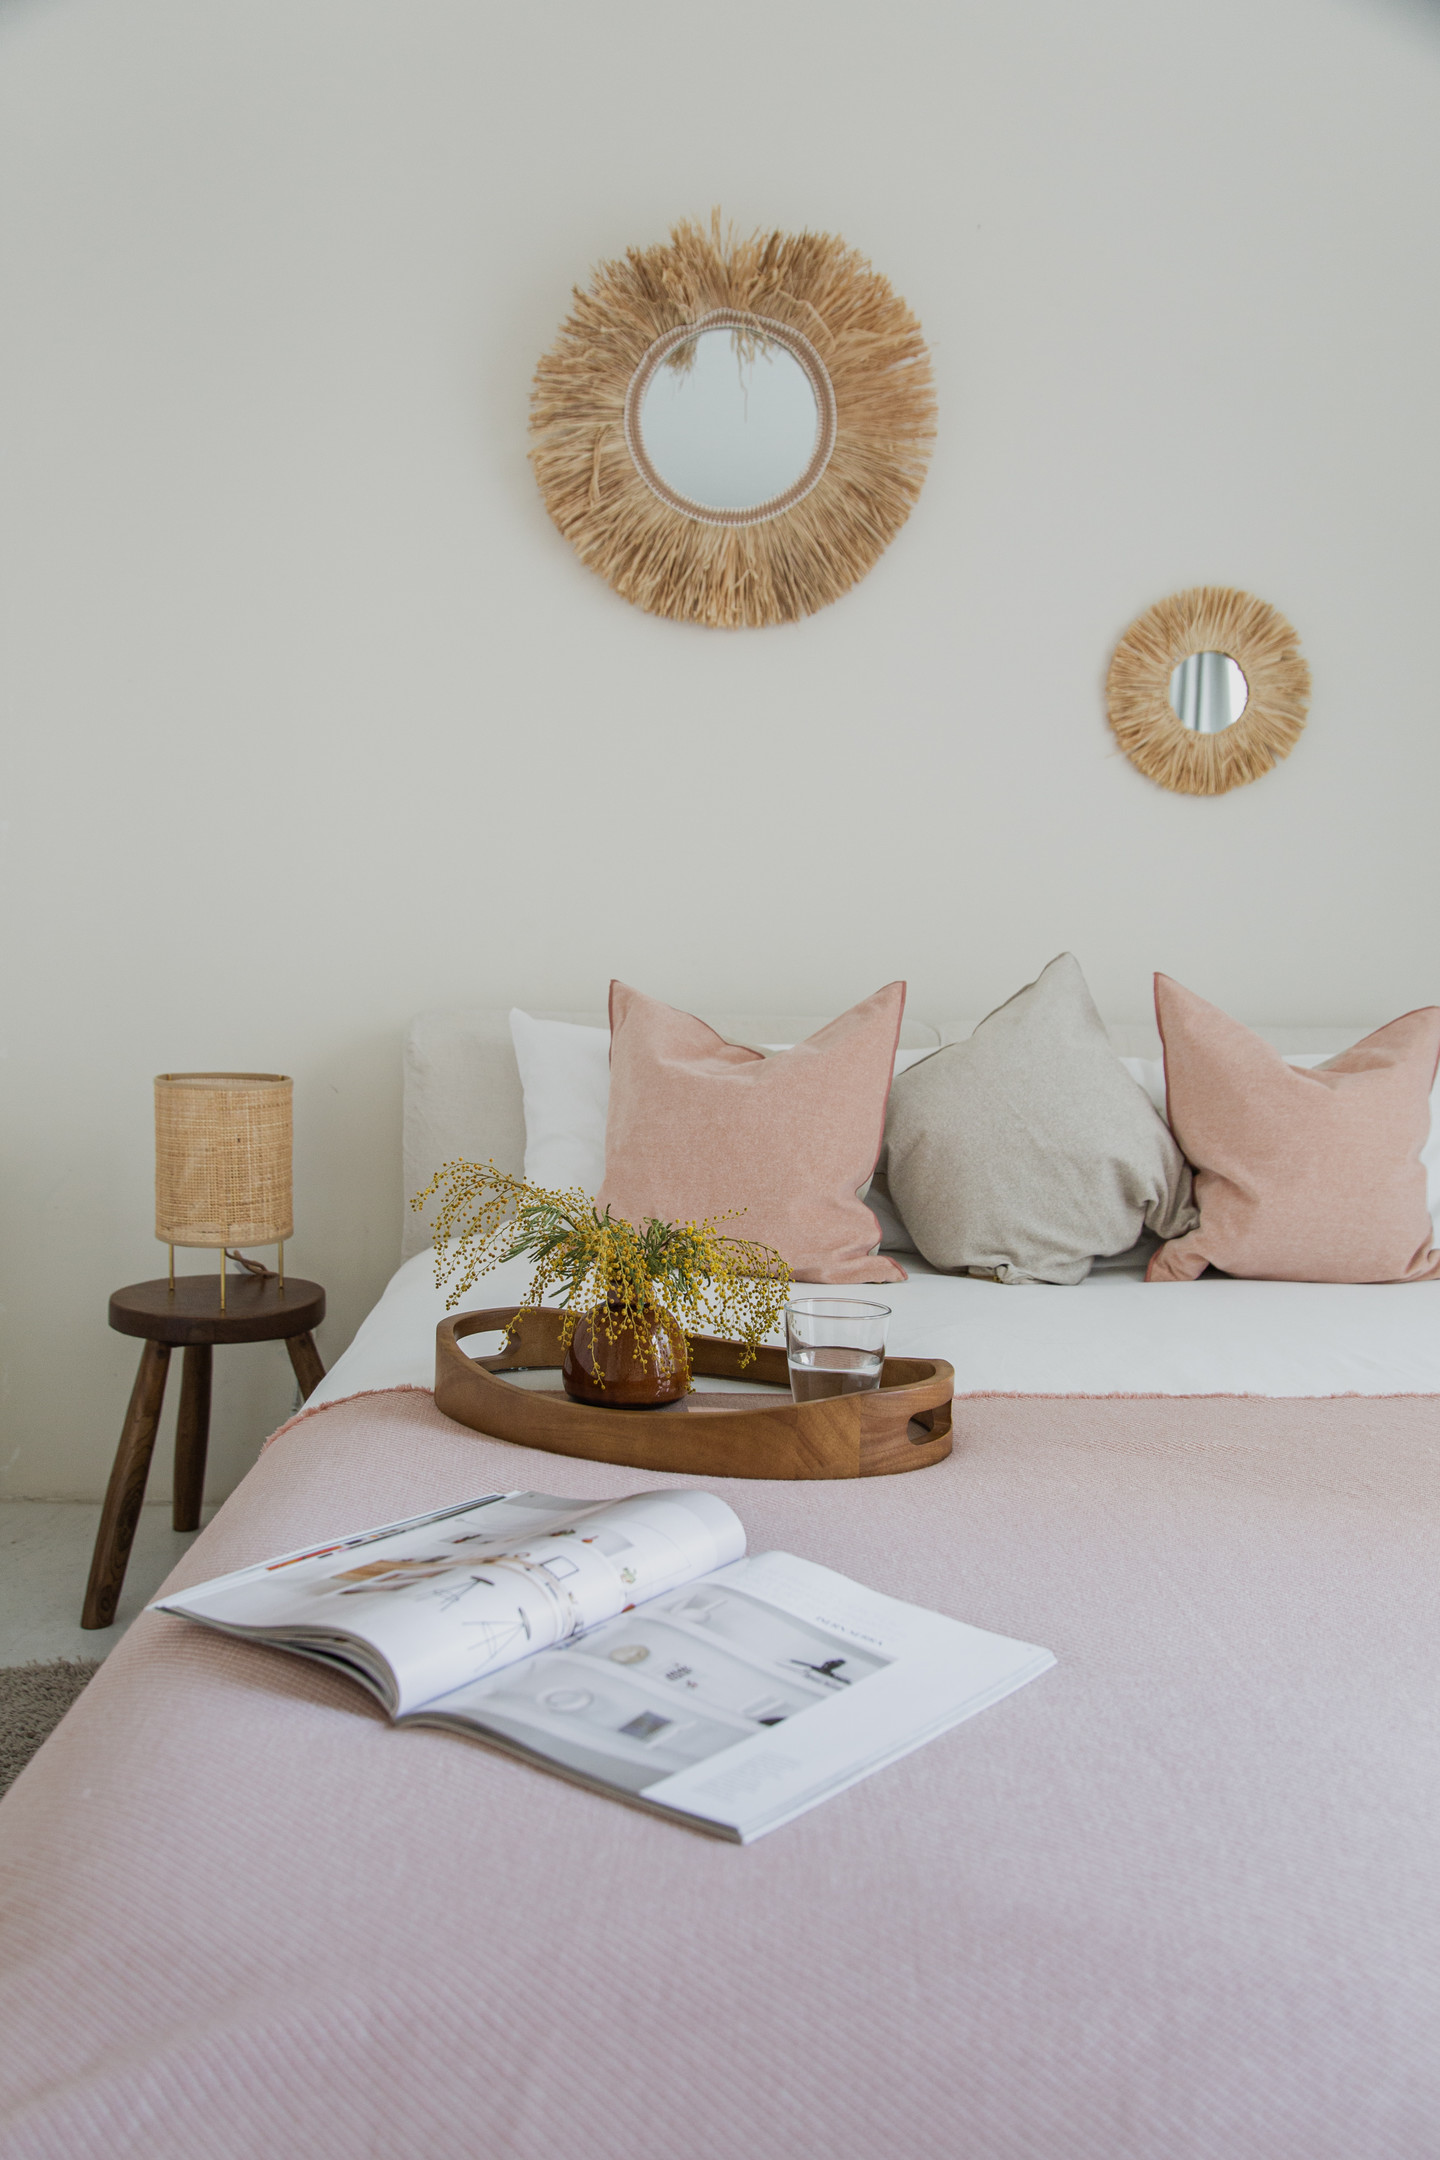 Phòng ngủ thứ hai là sự kết hợp của 'cặp đôi' hoàn hảo: Xám - hồng. Nếu màu xám mang đến sự sang trọng thì sắc hồng lại ngọt ngào, nữ tính. Hai tấm gương treo tường cũng tương đồng với phong cách trang trí phòng khách và phòng ngủ đầu tiên.